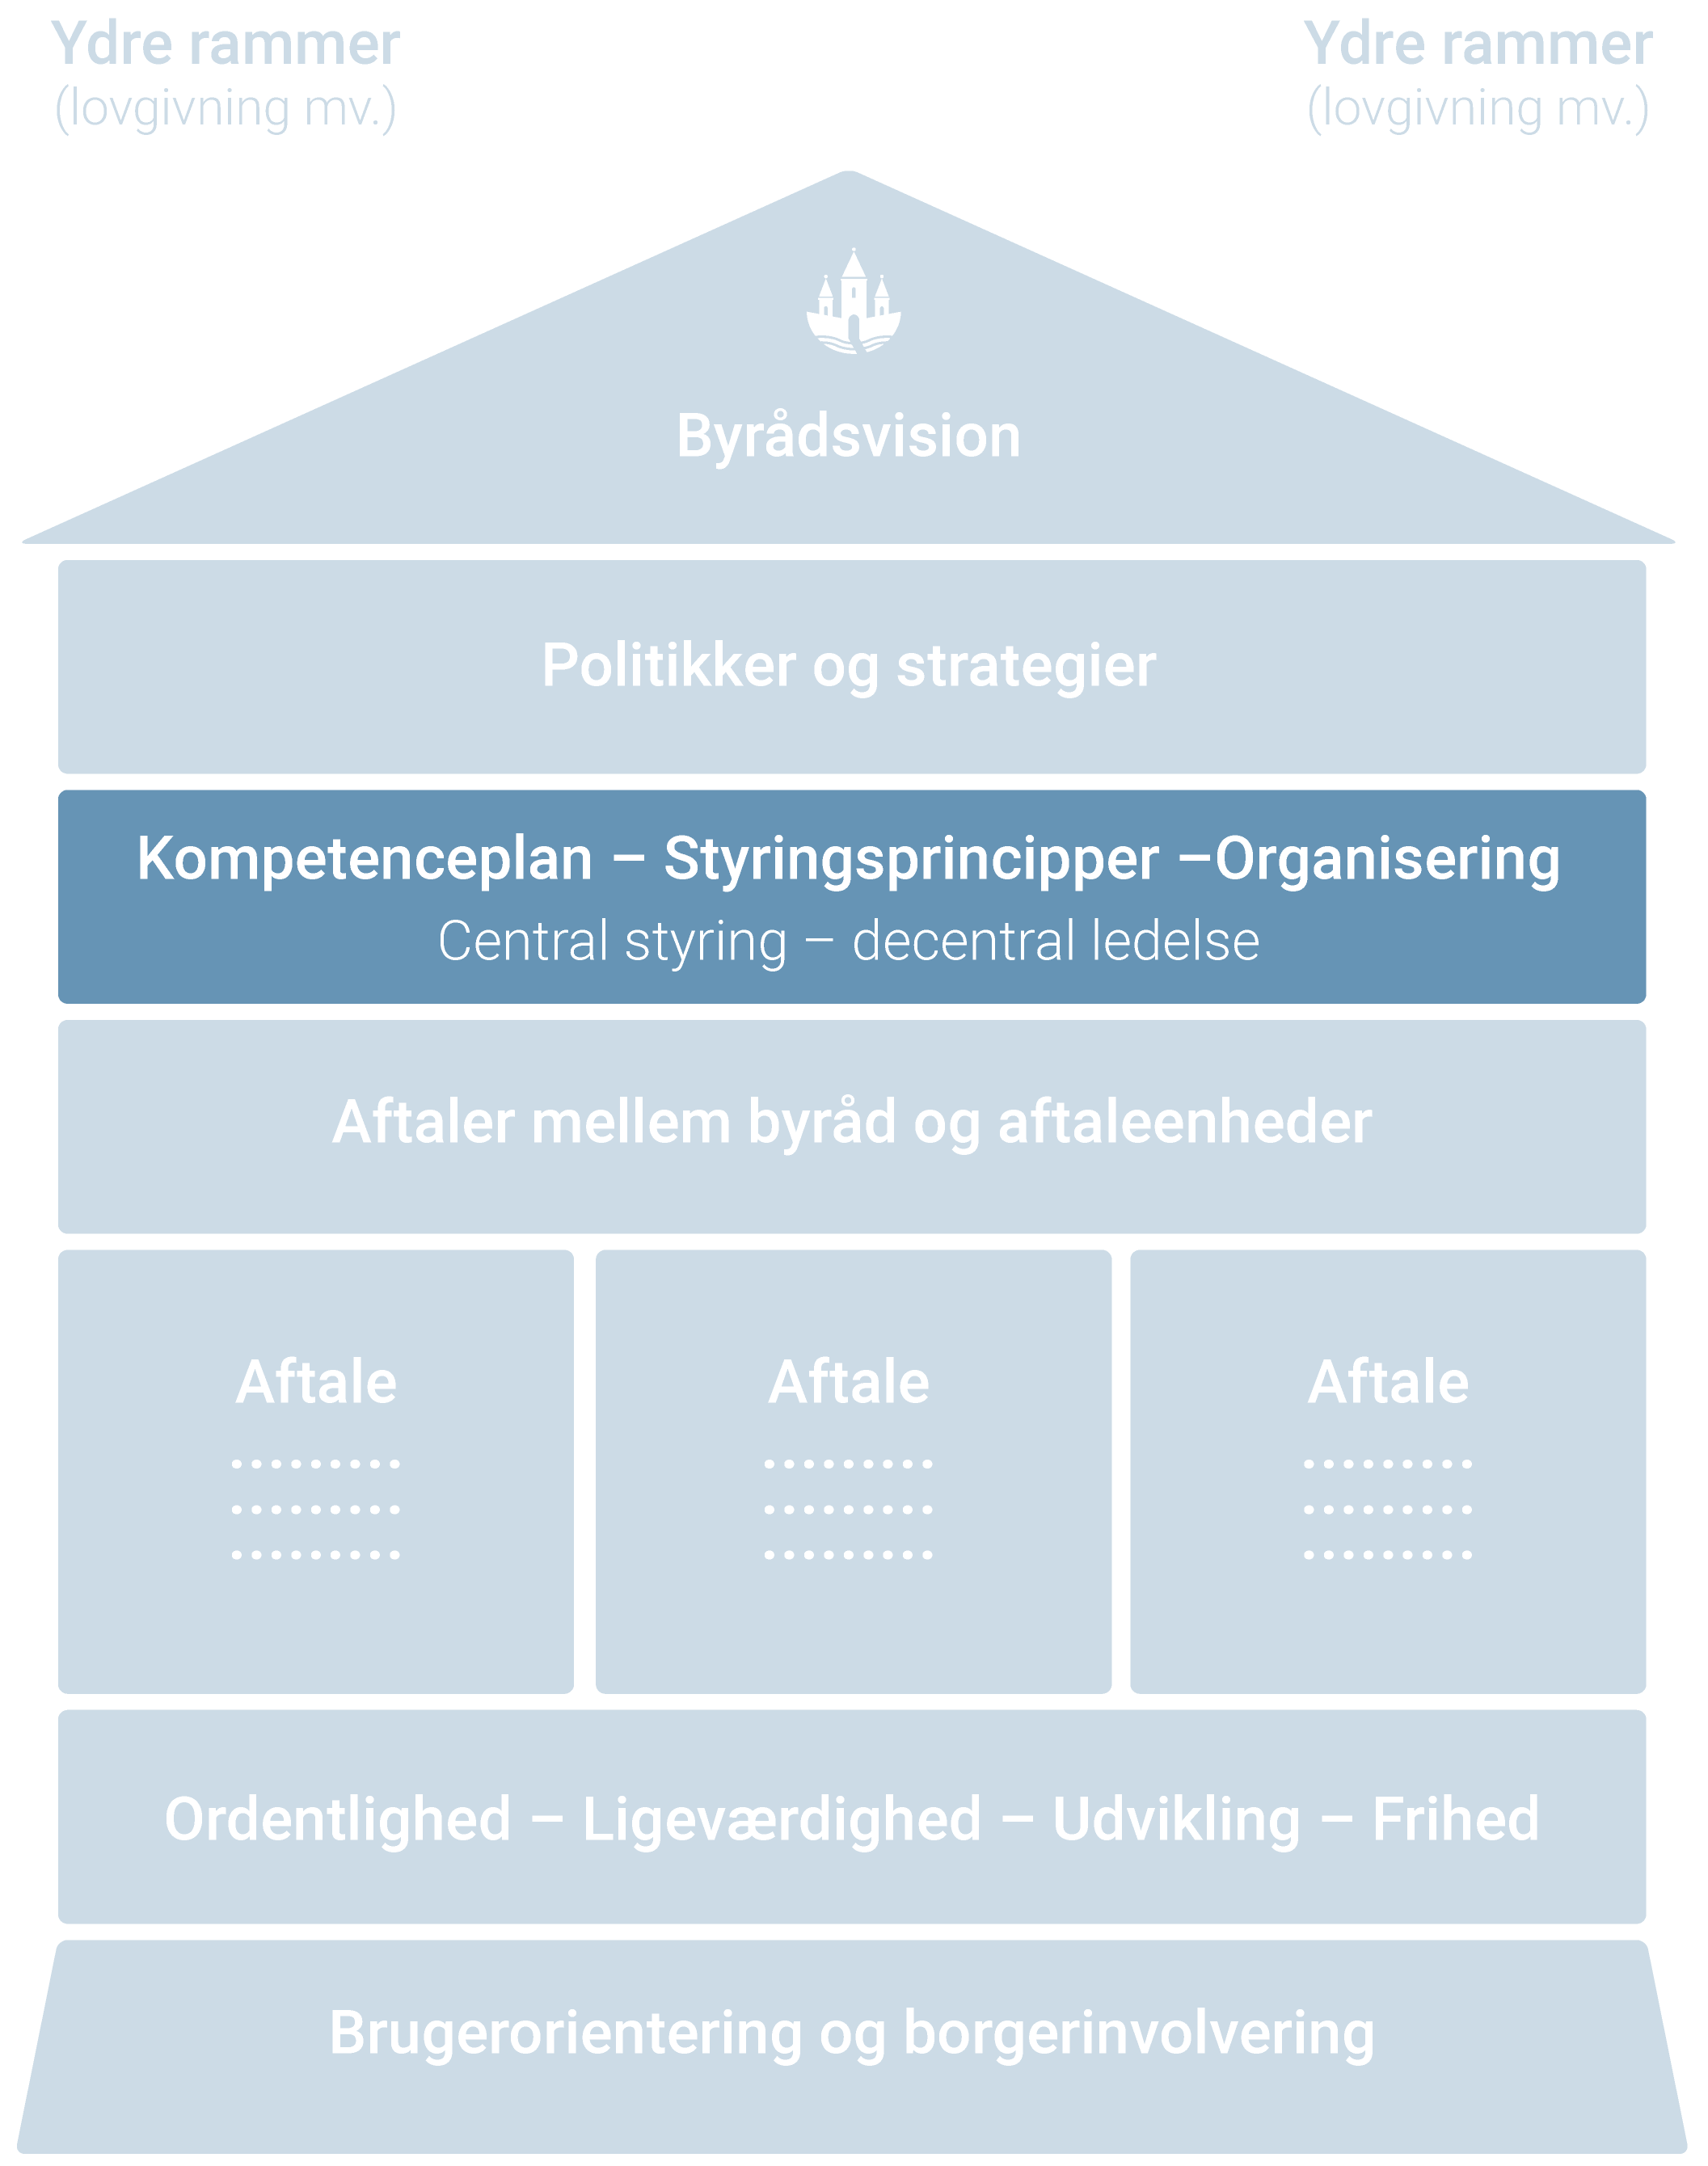 Huset som illustrerer Randersmodellen, hvor kompetenceplan, styringsprincipper og organisering er fremhævet